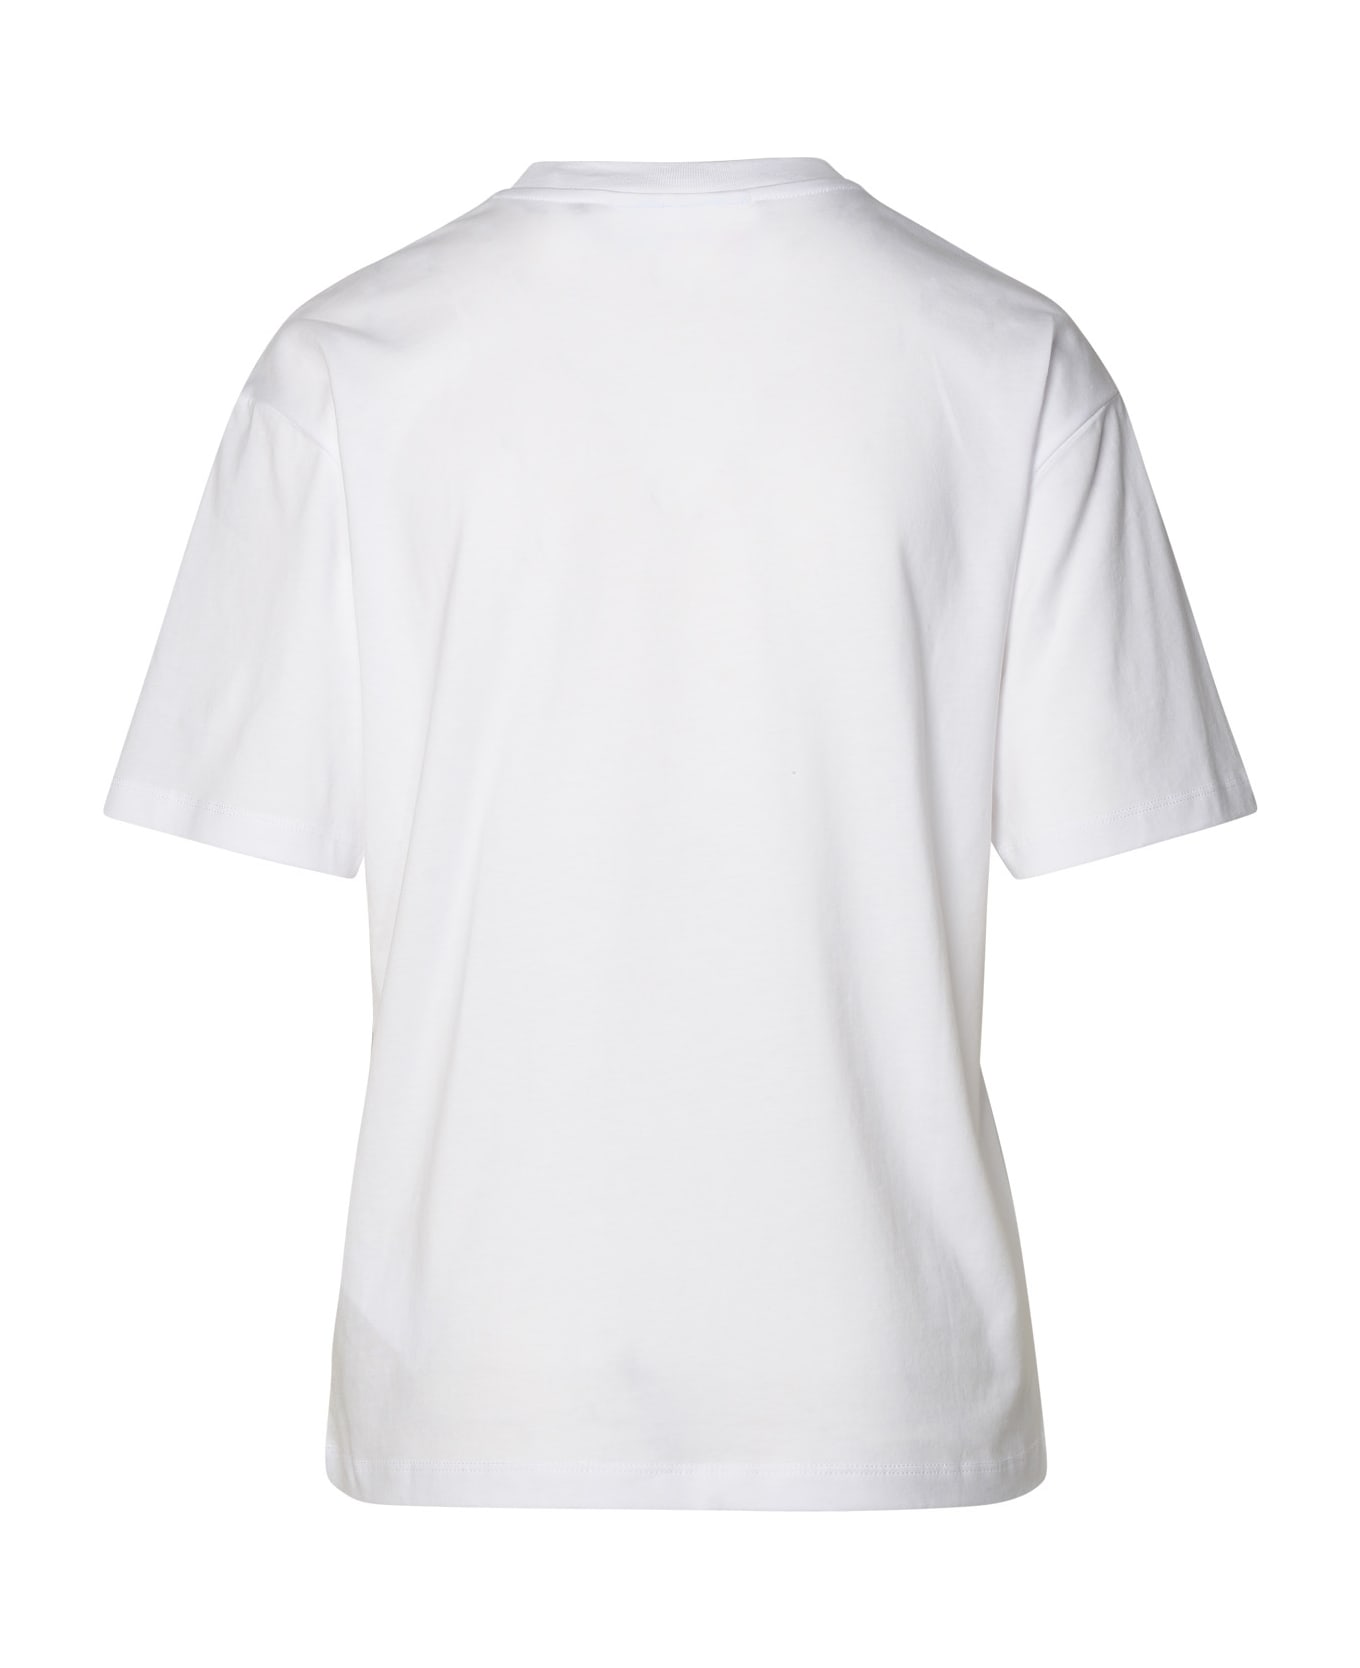 Chiara Ferragni White Cotton T-shirt - White Tシャツ